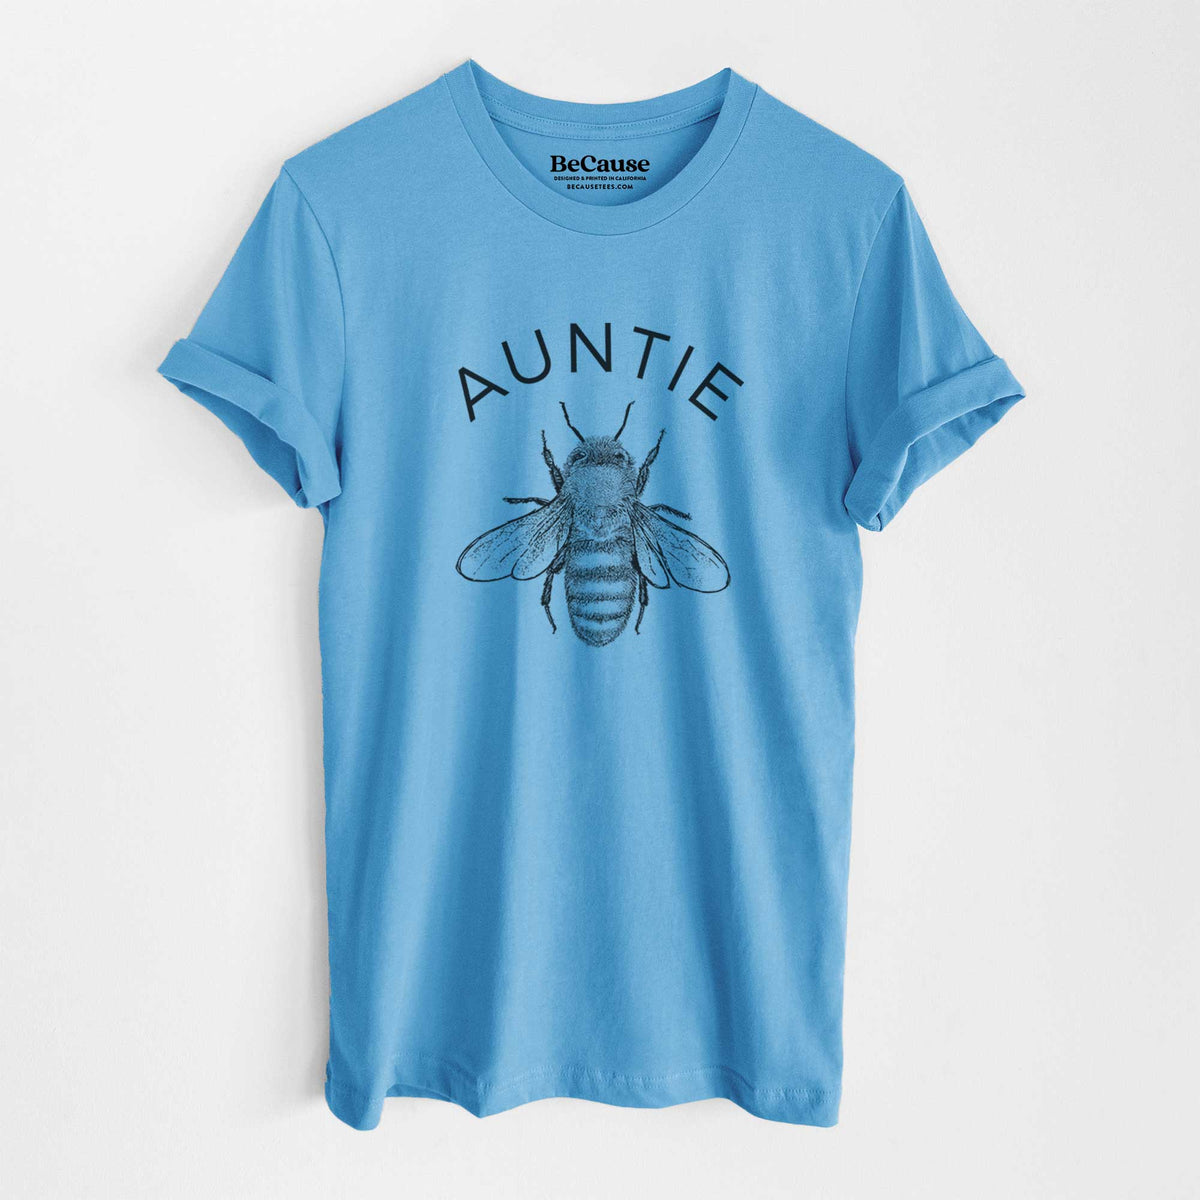 Auntie Bee - Lightweight 100% Cotton Unisex Crewneck